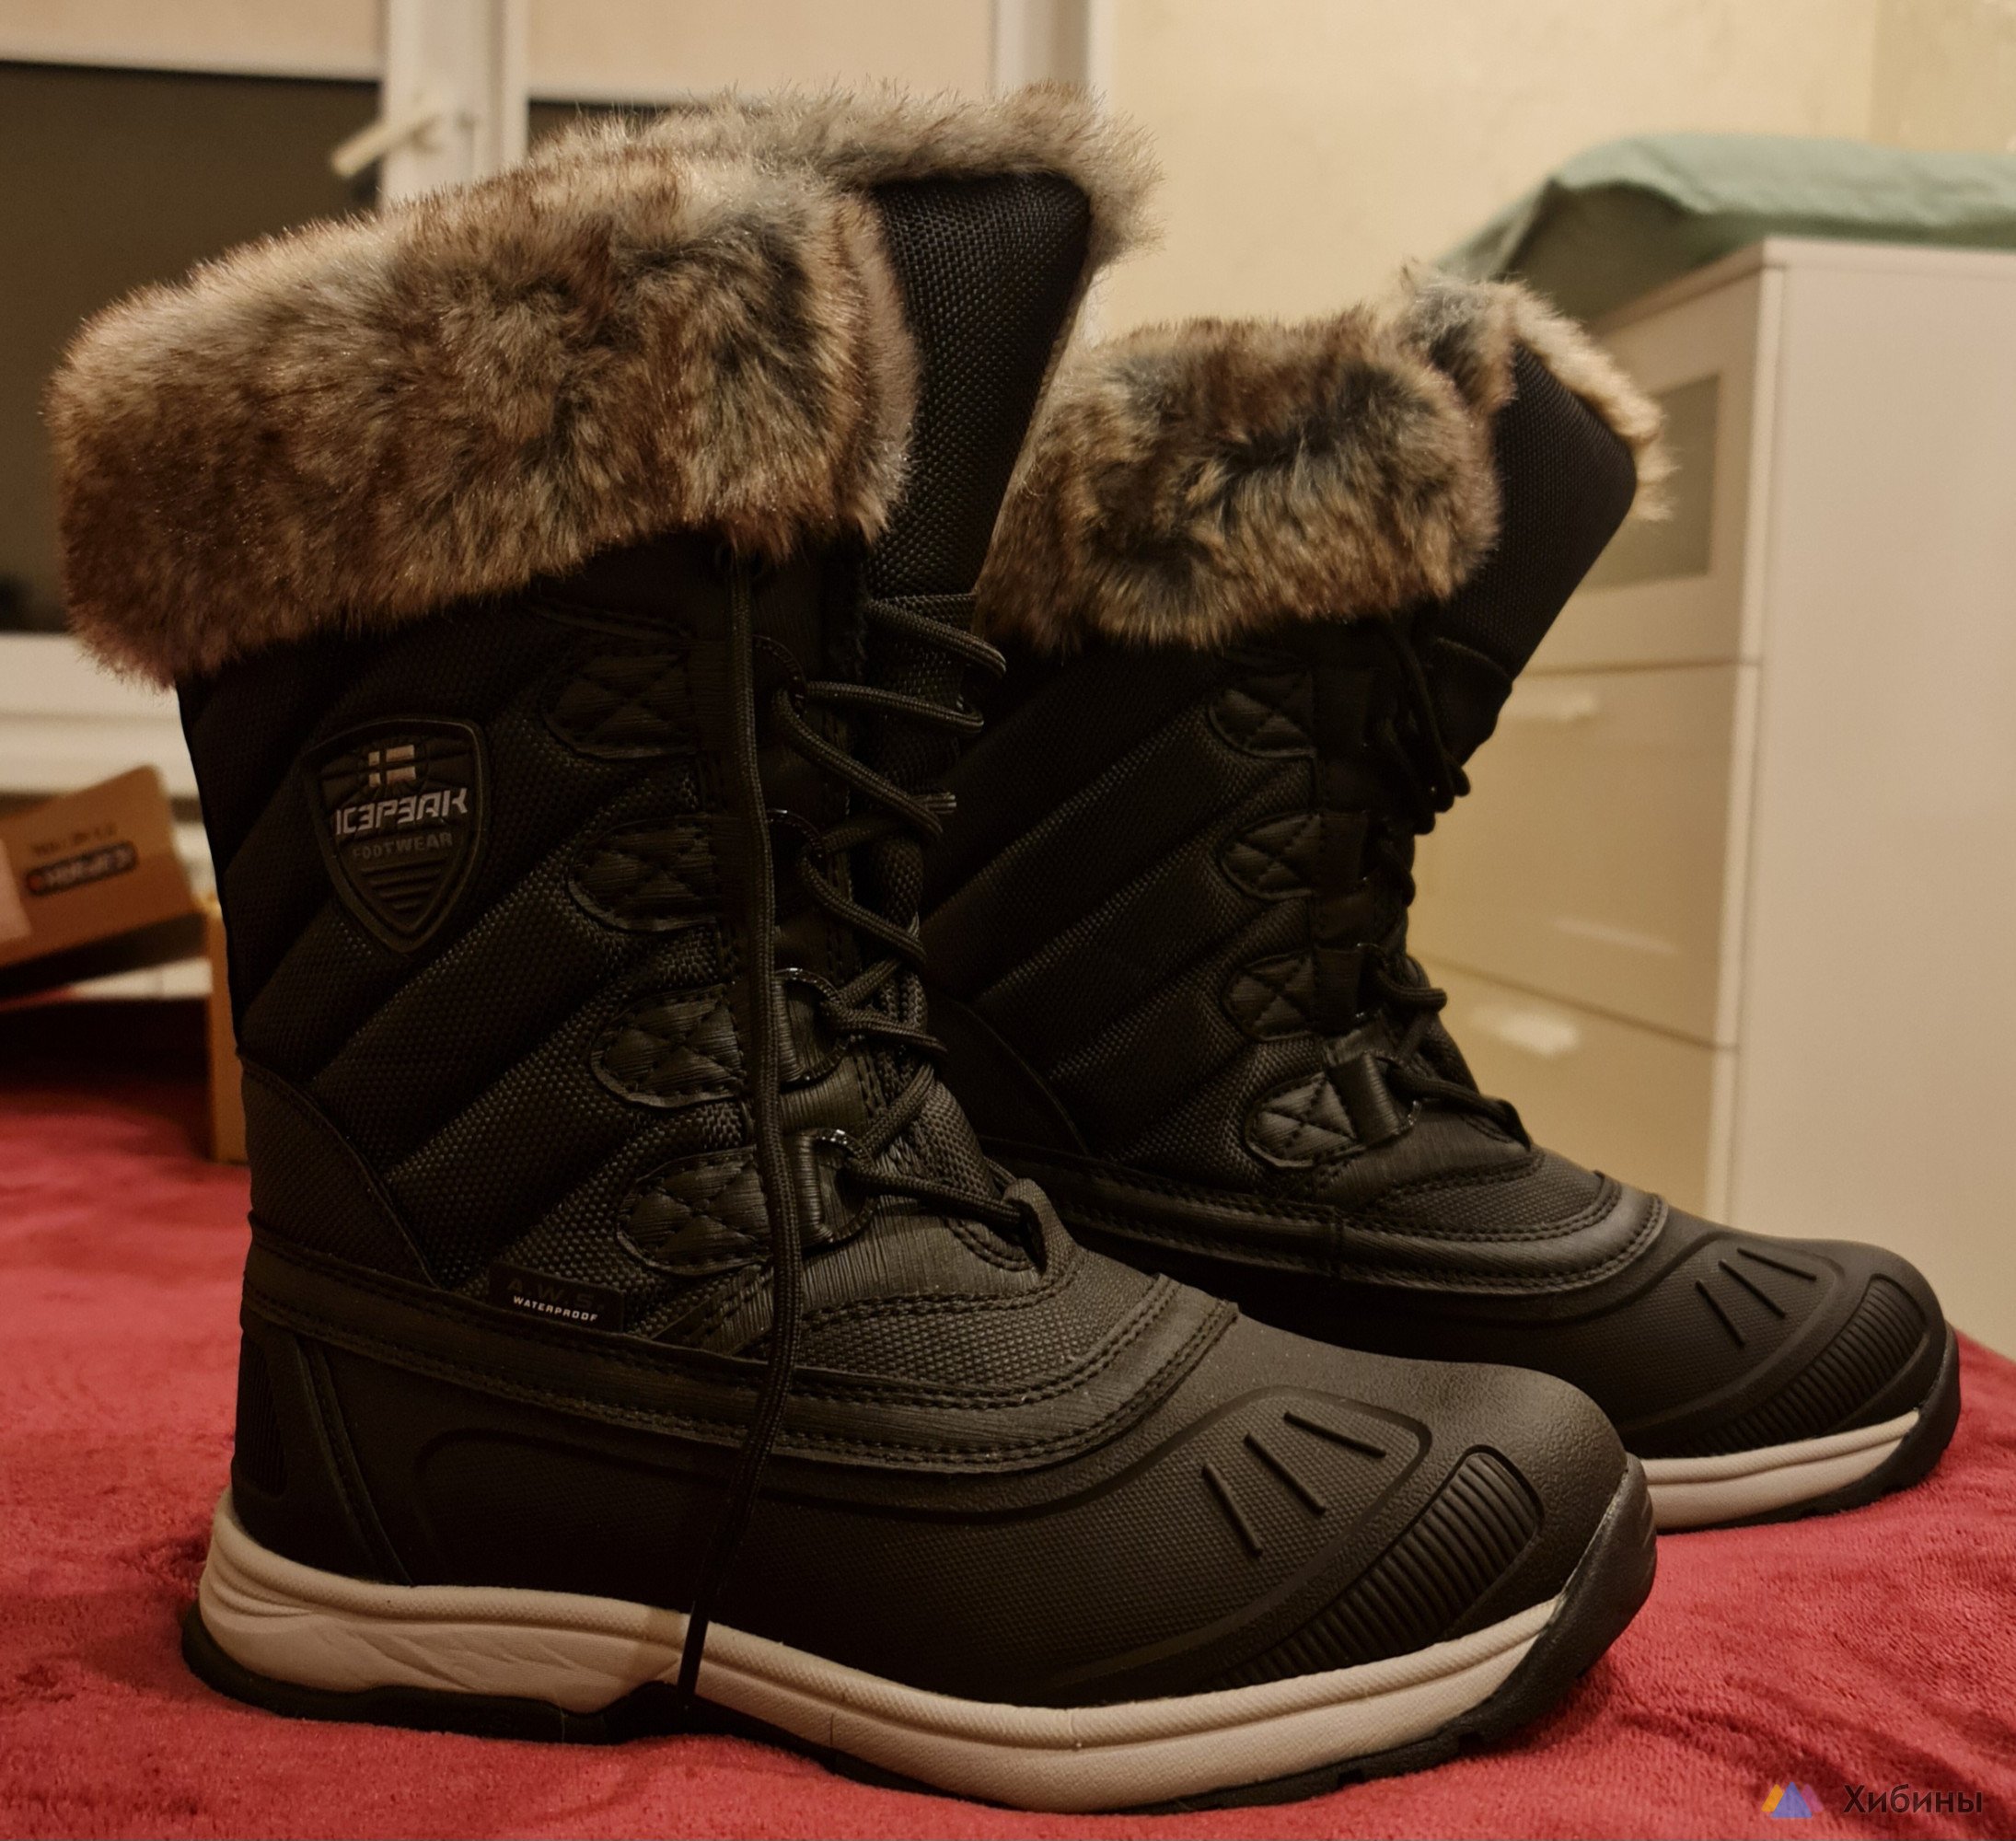 Ботинки сапоги женские Icepeak Финляндия, новые